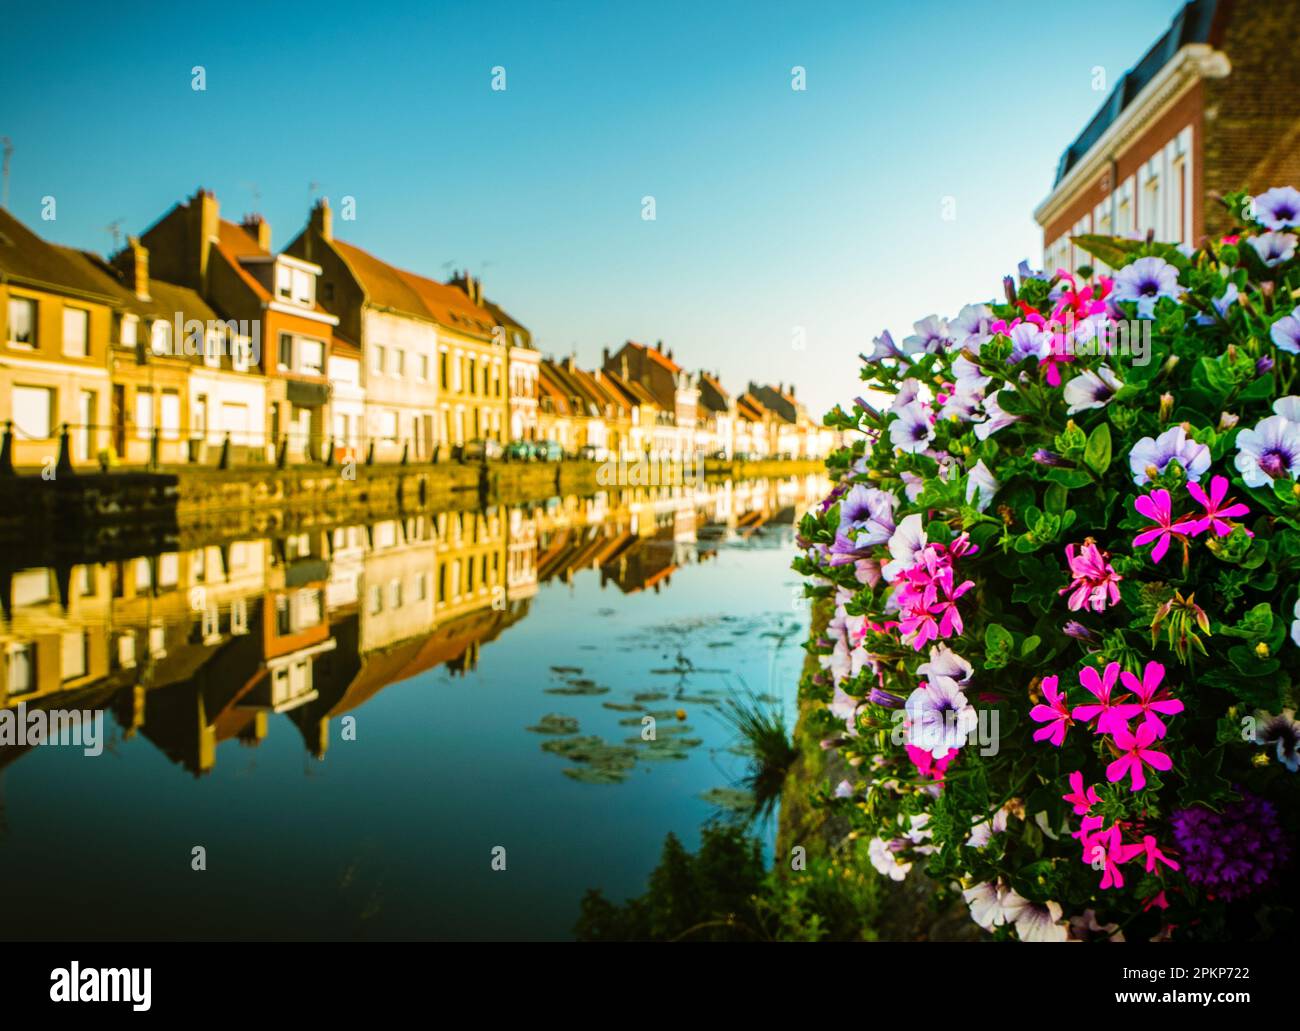 Calma l'aa canale acqua del fiume con fiori in fiore bouquet e linea di case di architettura tradizionale francese moderna nella città di saint-omer Foto Stock